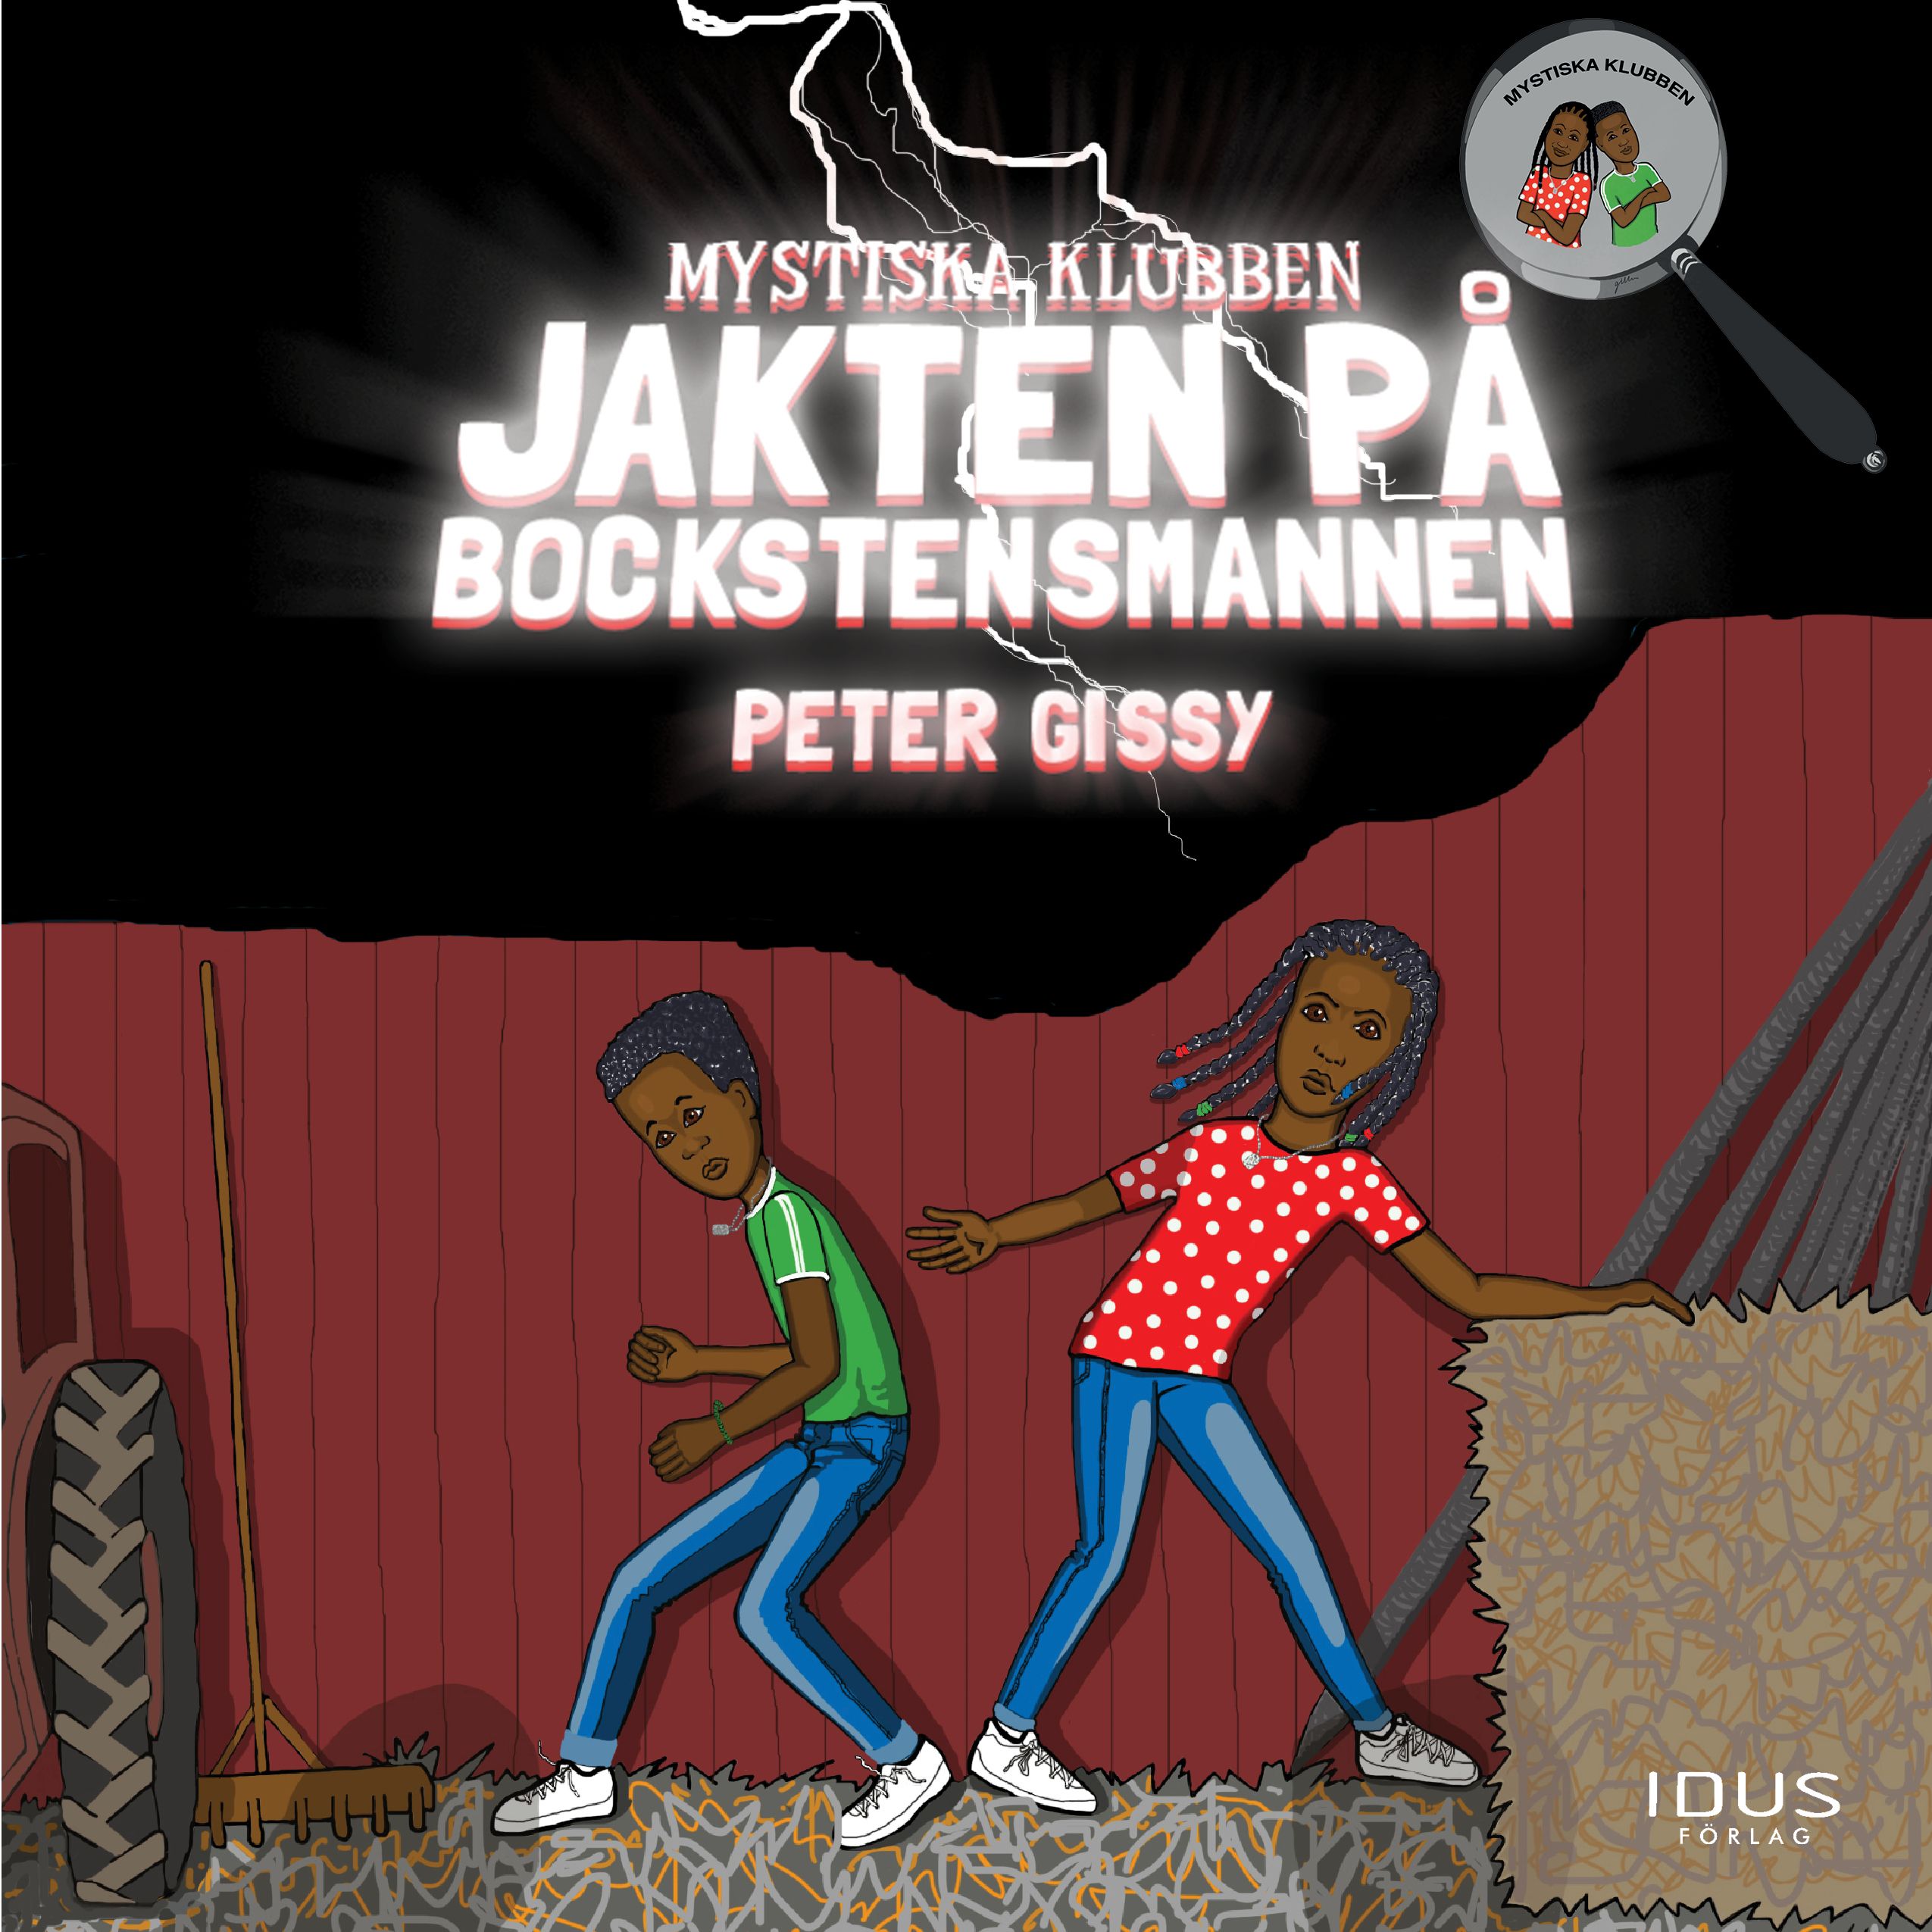 Jakten på Bockstensmannen, audiobook by Peter Gissy